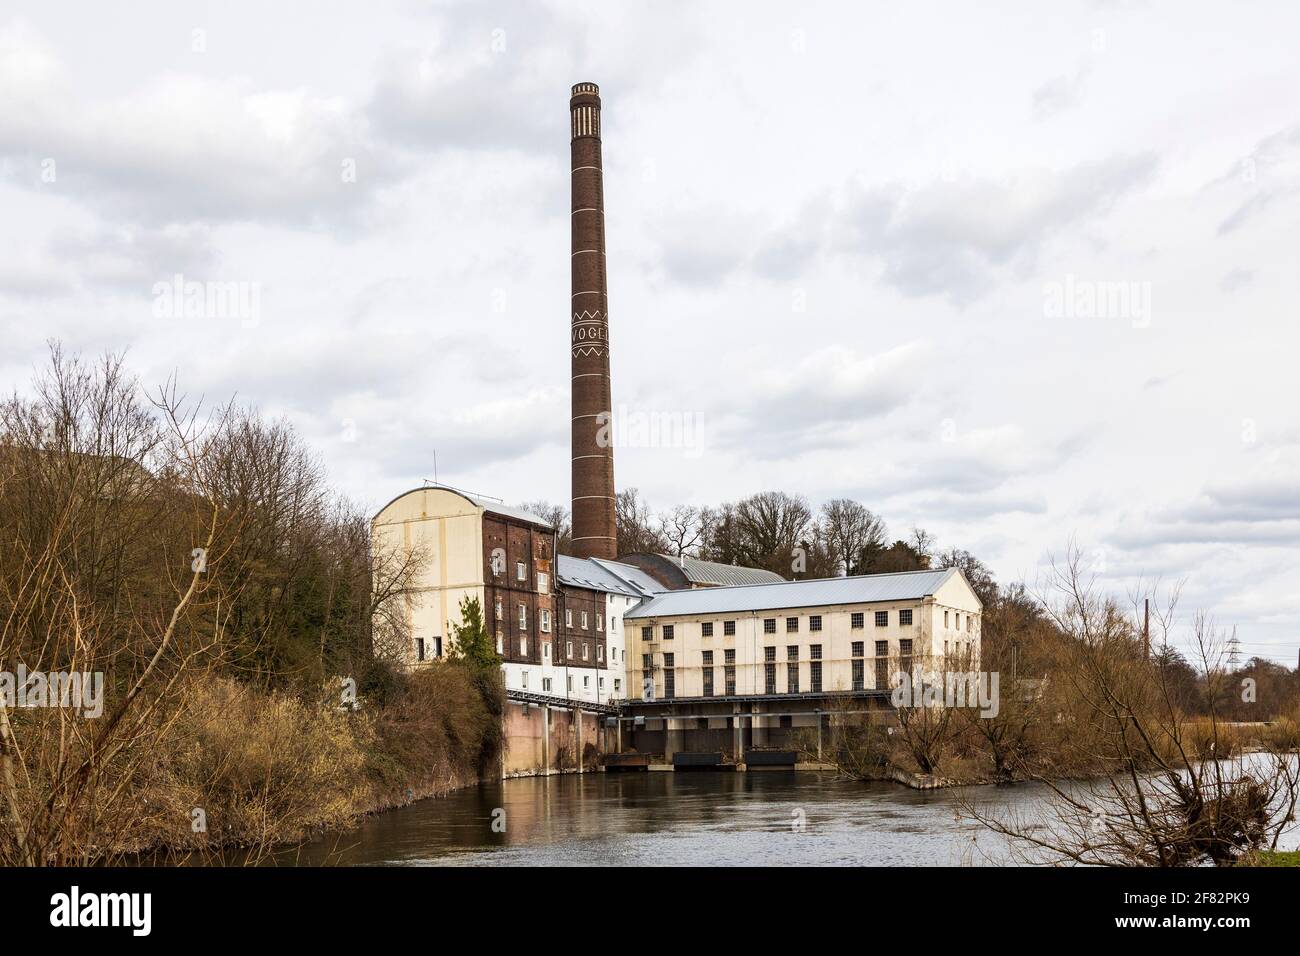 Centrale hydroélectrique Horster Mühle sur la Ruhr à Essen, Allemagne. Banque D'Images